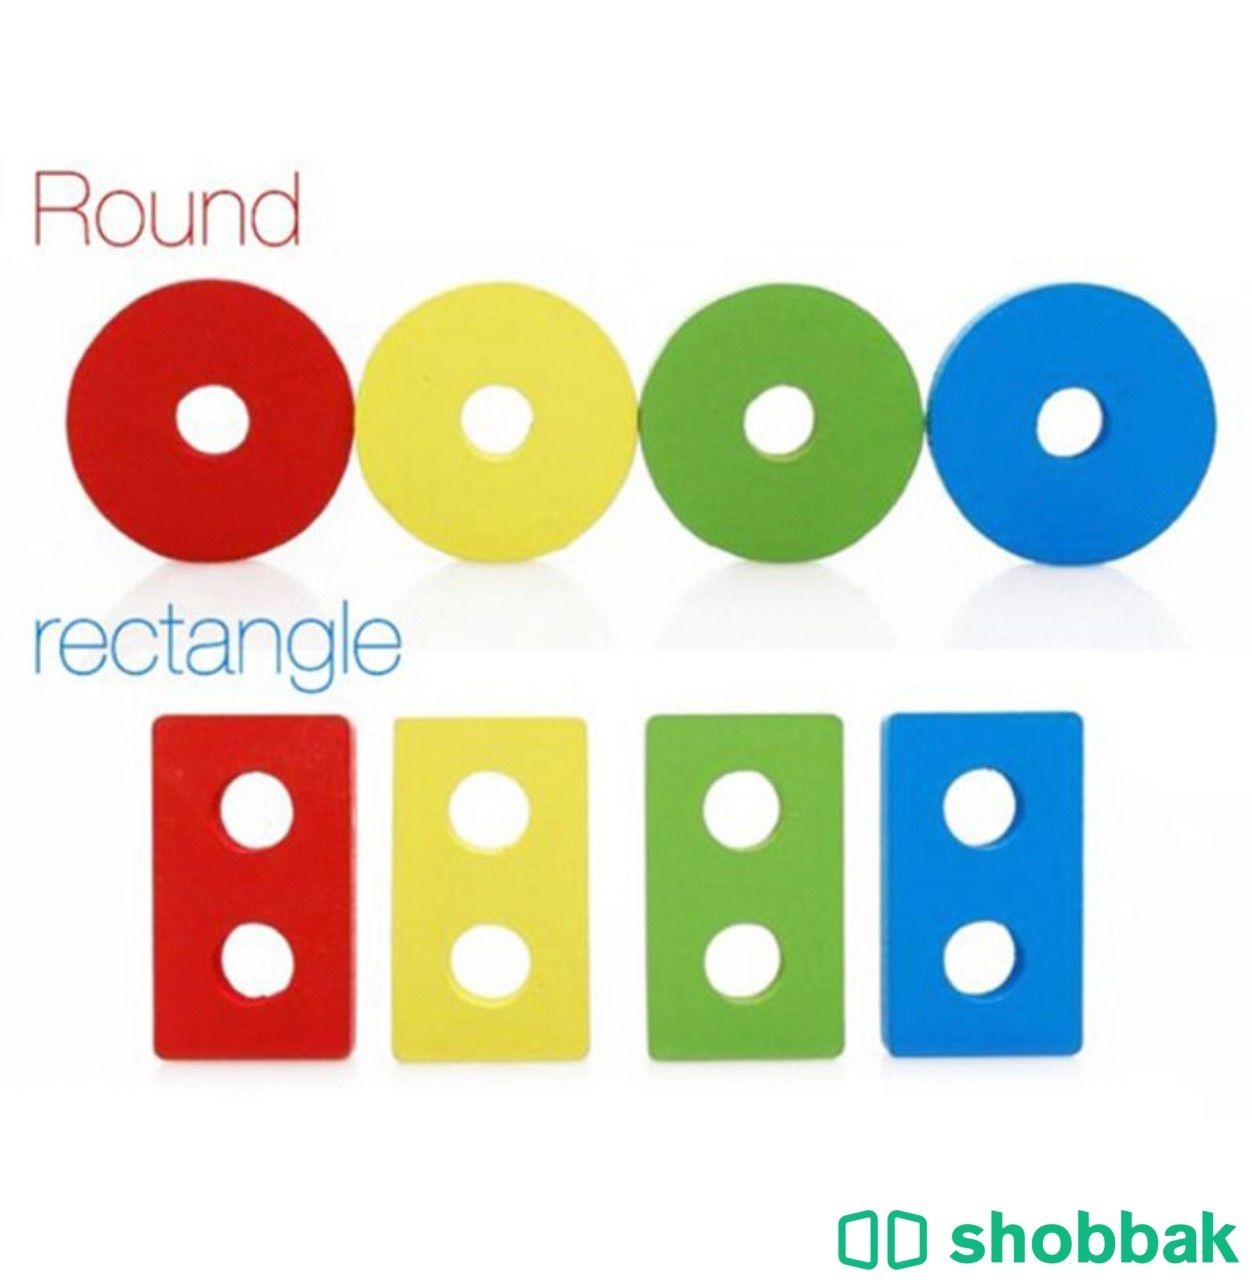 17 قطعة ألعاب مطابقة الشكل الهندسي سم مكعبات قابلة للفصل والإزالة للأطفال حتى سن Shobbak Saudi Arabia